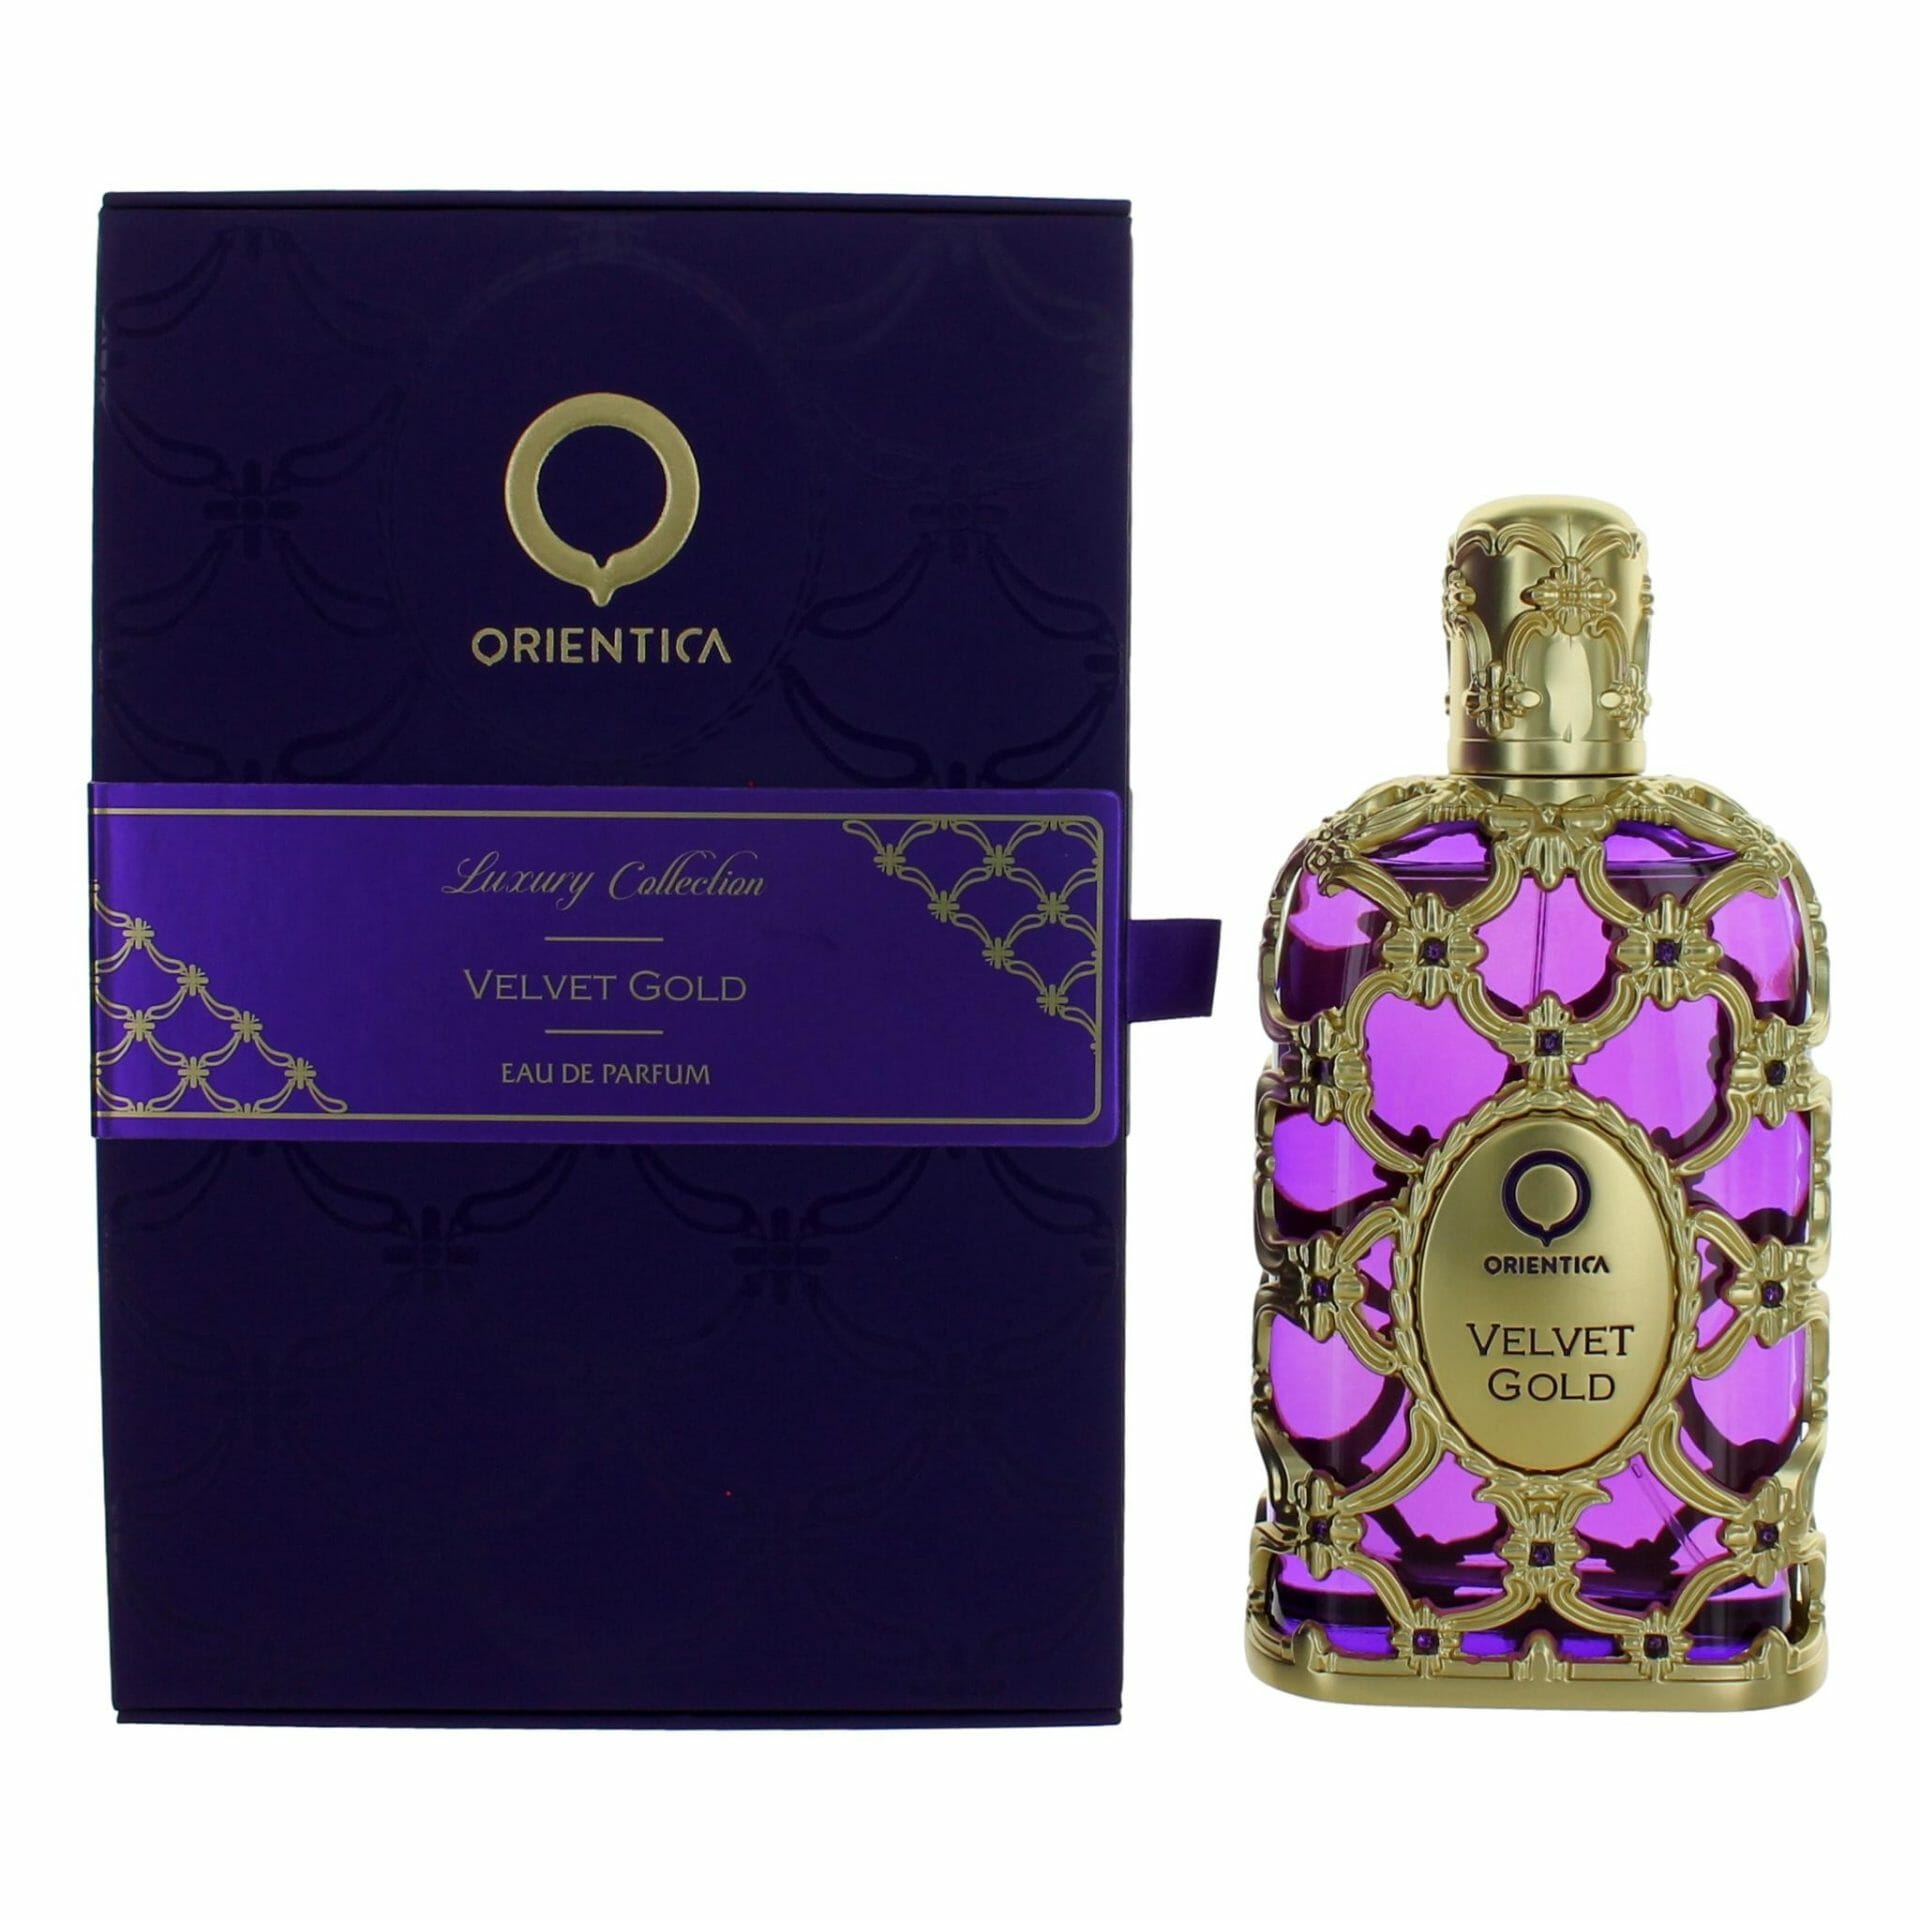 Orientica Unisex Velvet Gold Edp 5.0 oz Fragrances 6297001158265 In Gold / Pink / Rose Gold